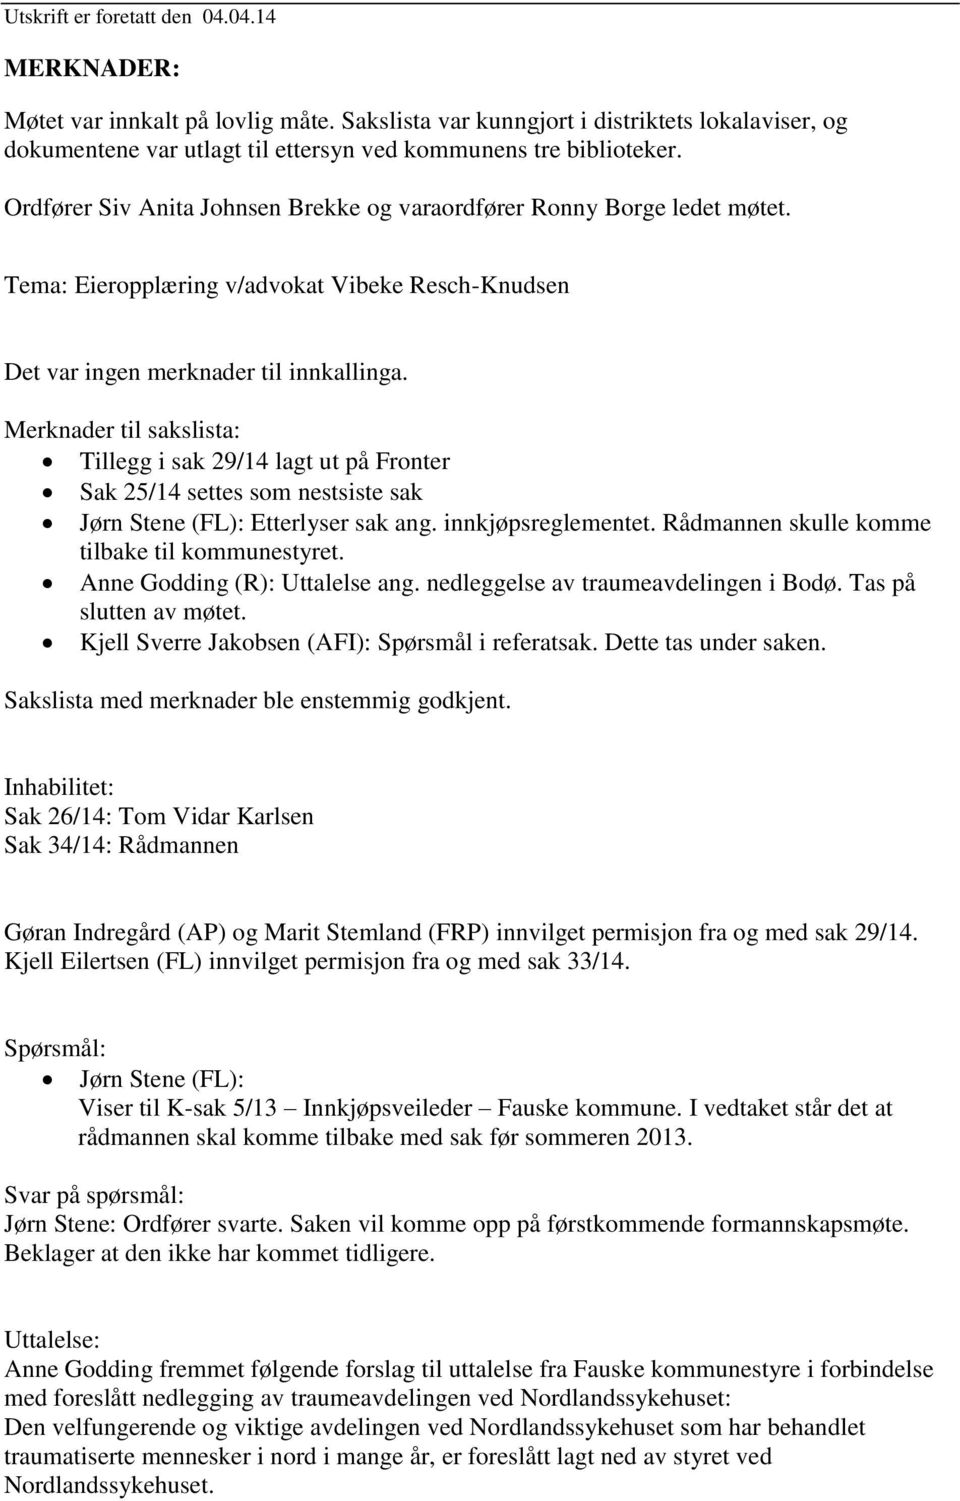 Merknader til sakslista: Tillegg i sak 29/14 lagt ut på Fronter Sak 25/14 settes som nestsiste sak Jørn Stene (FL): Etterlyser sak ang. innkjøpsreglementet.